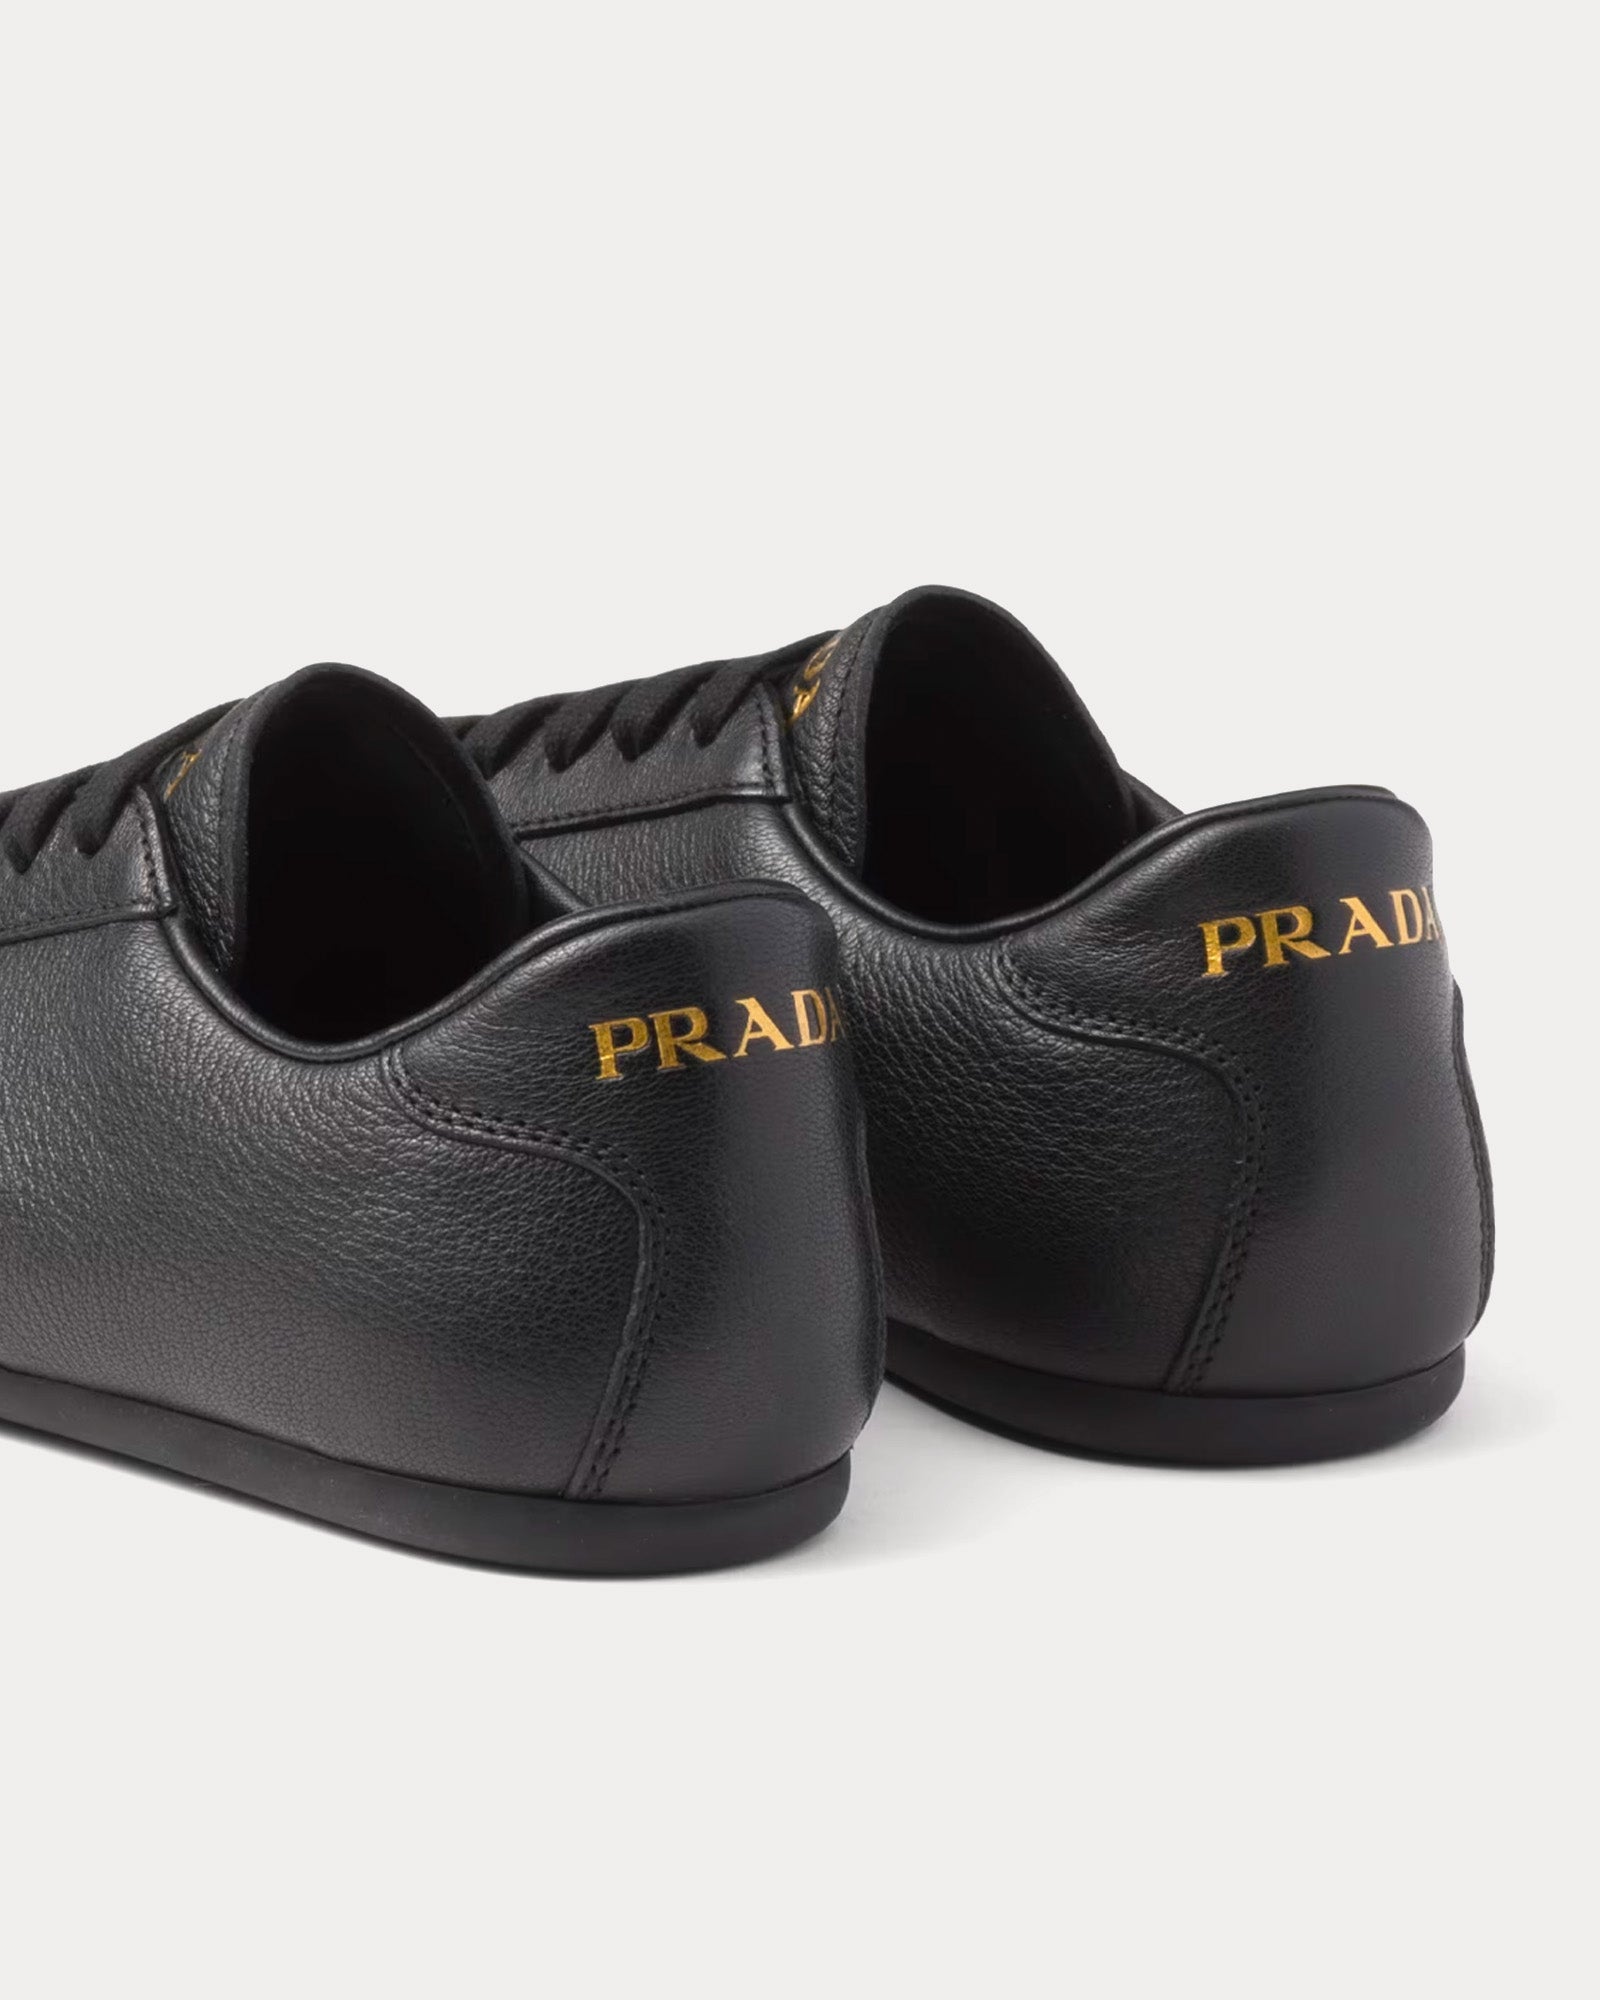 Prada - Deer Leather Black Low Top Sneakers